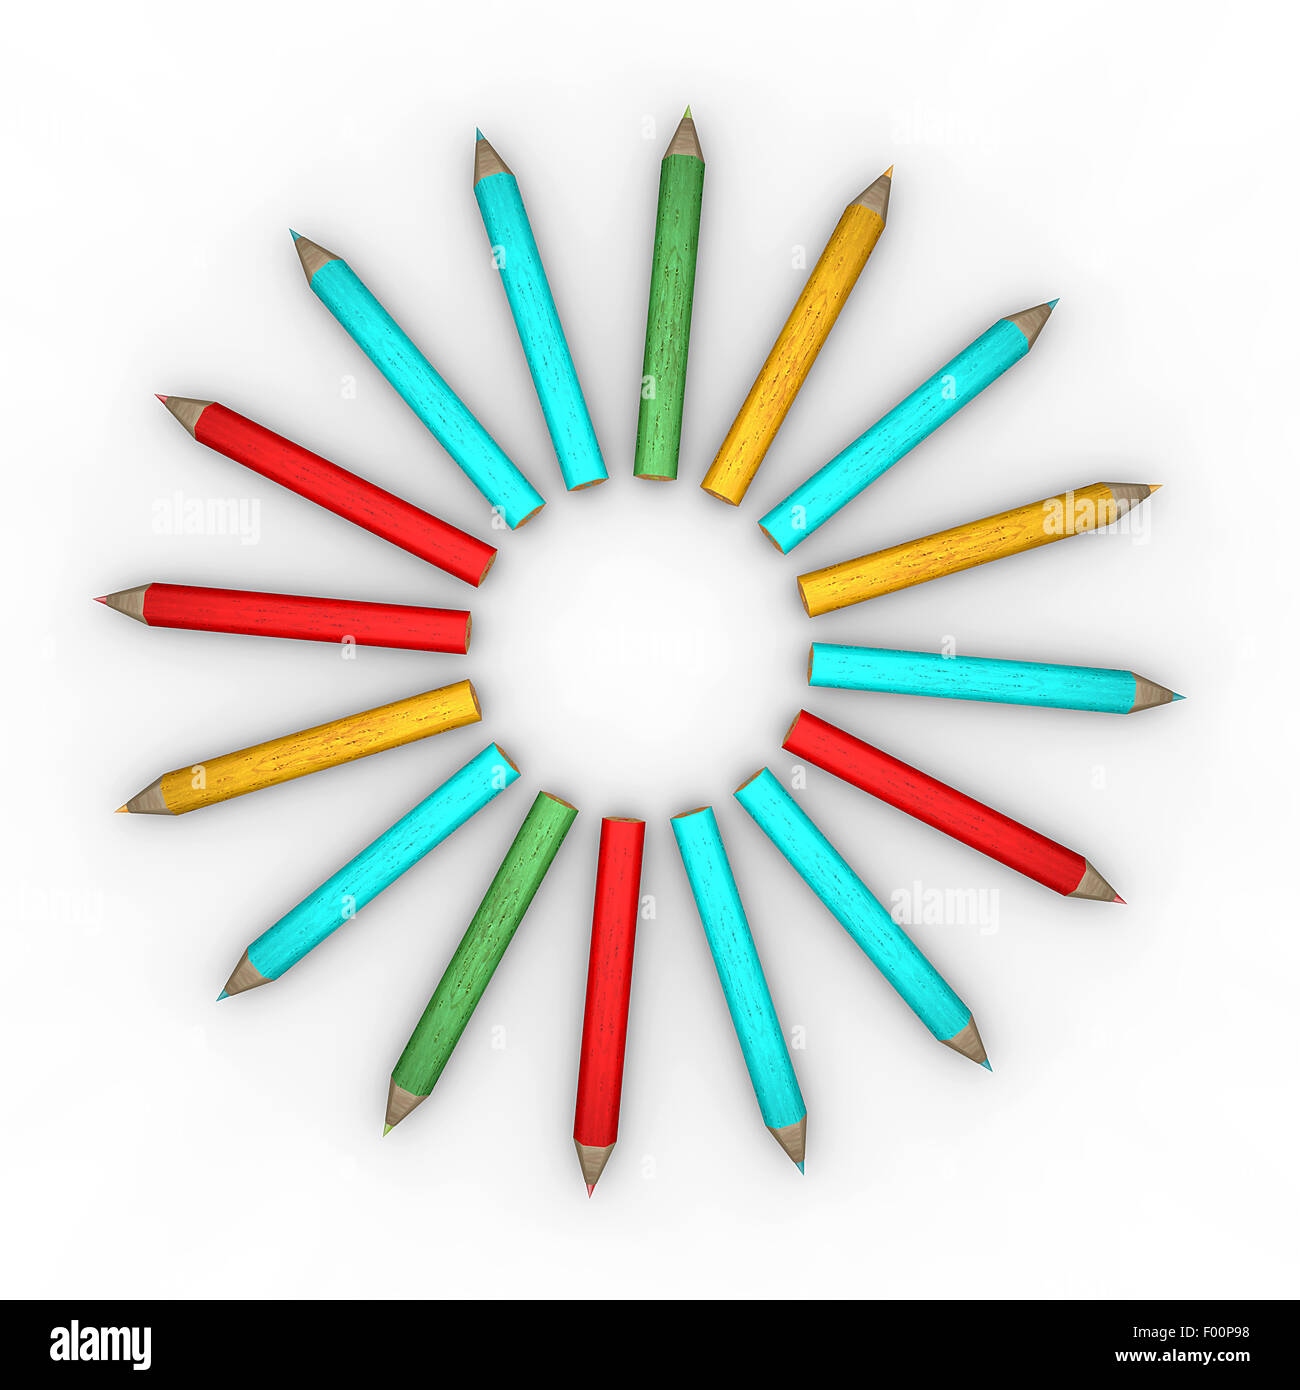 Circle-shaped pencils on white background Stock Photo